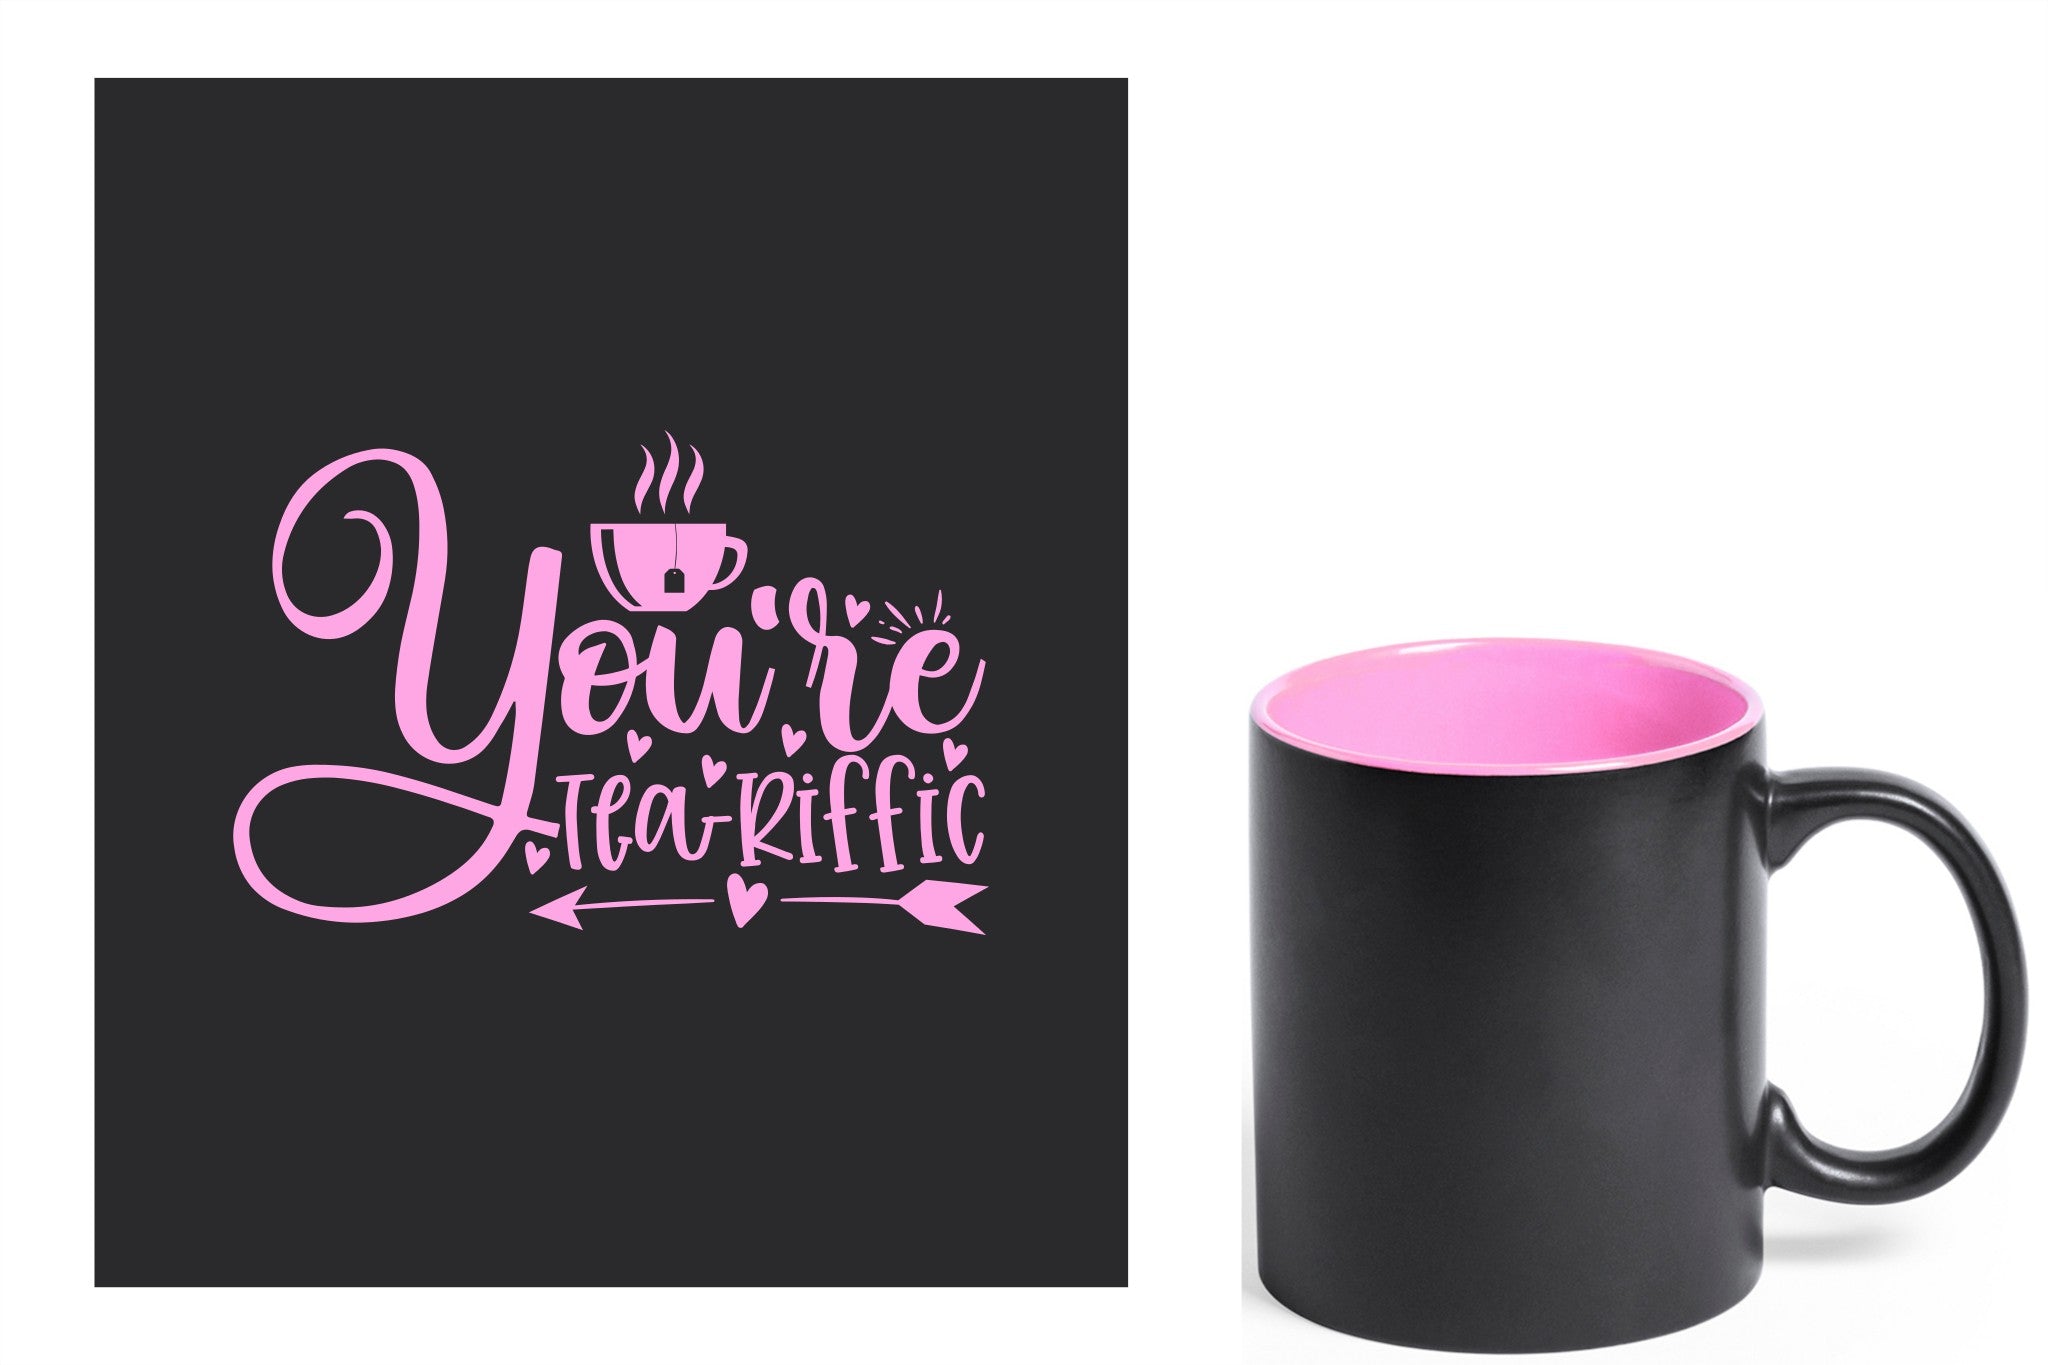 zwarte keramische mok met roze gravure  'You're teariffic'.